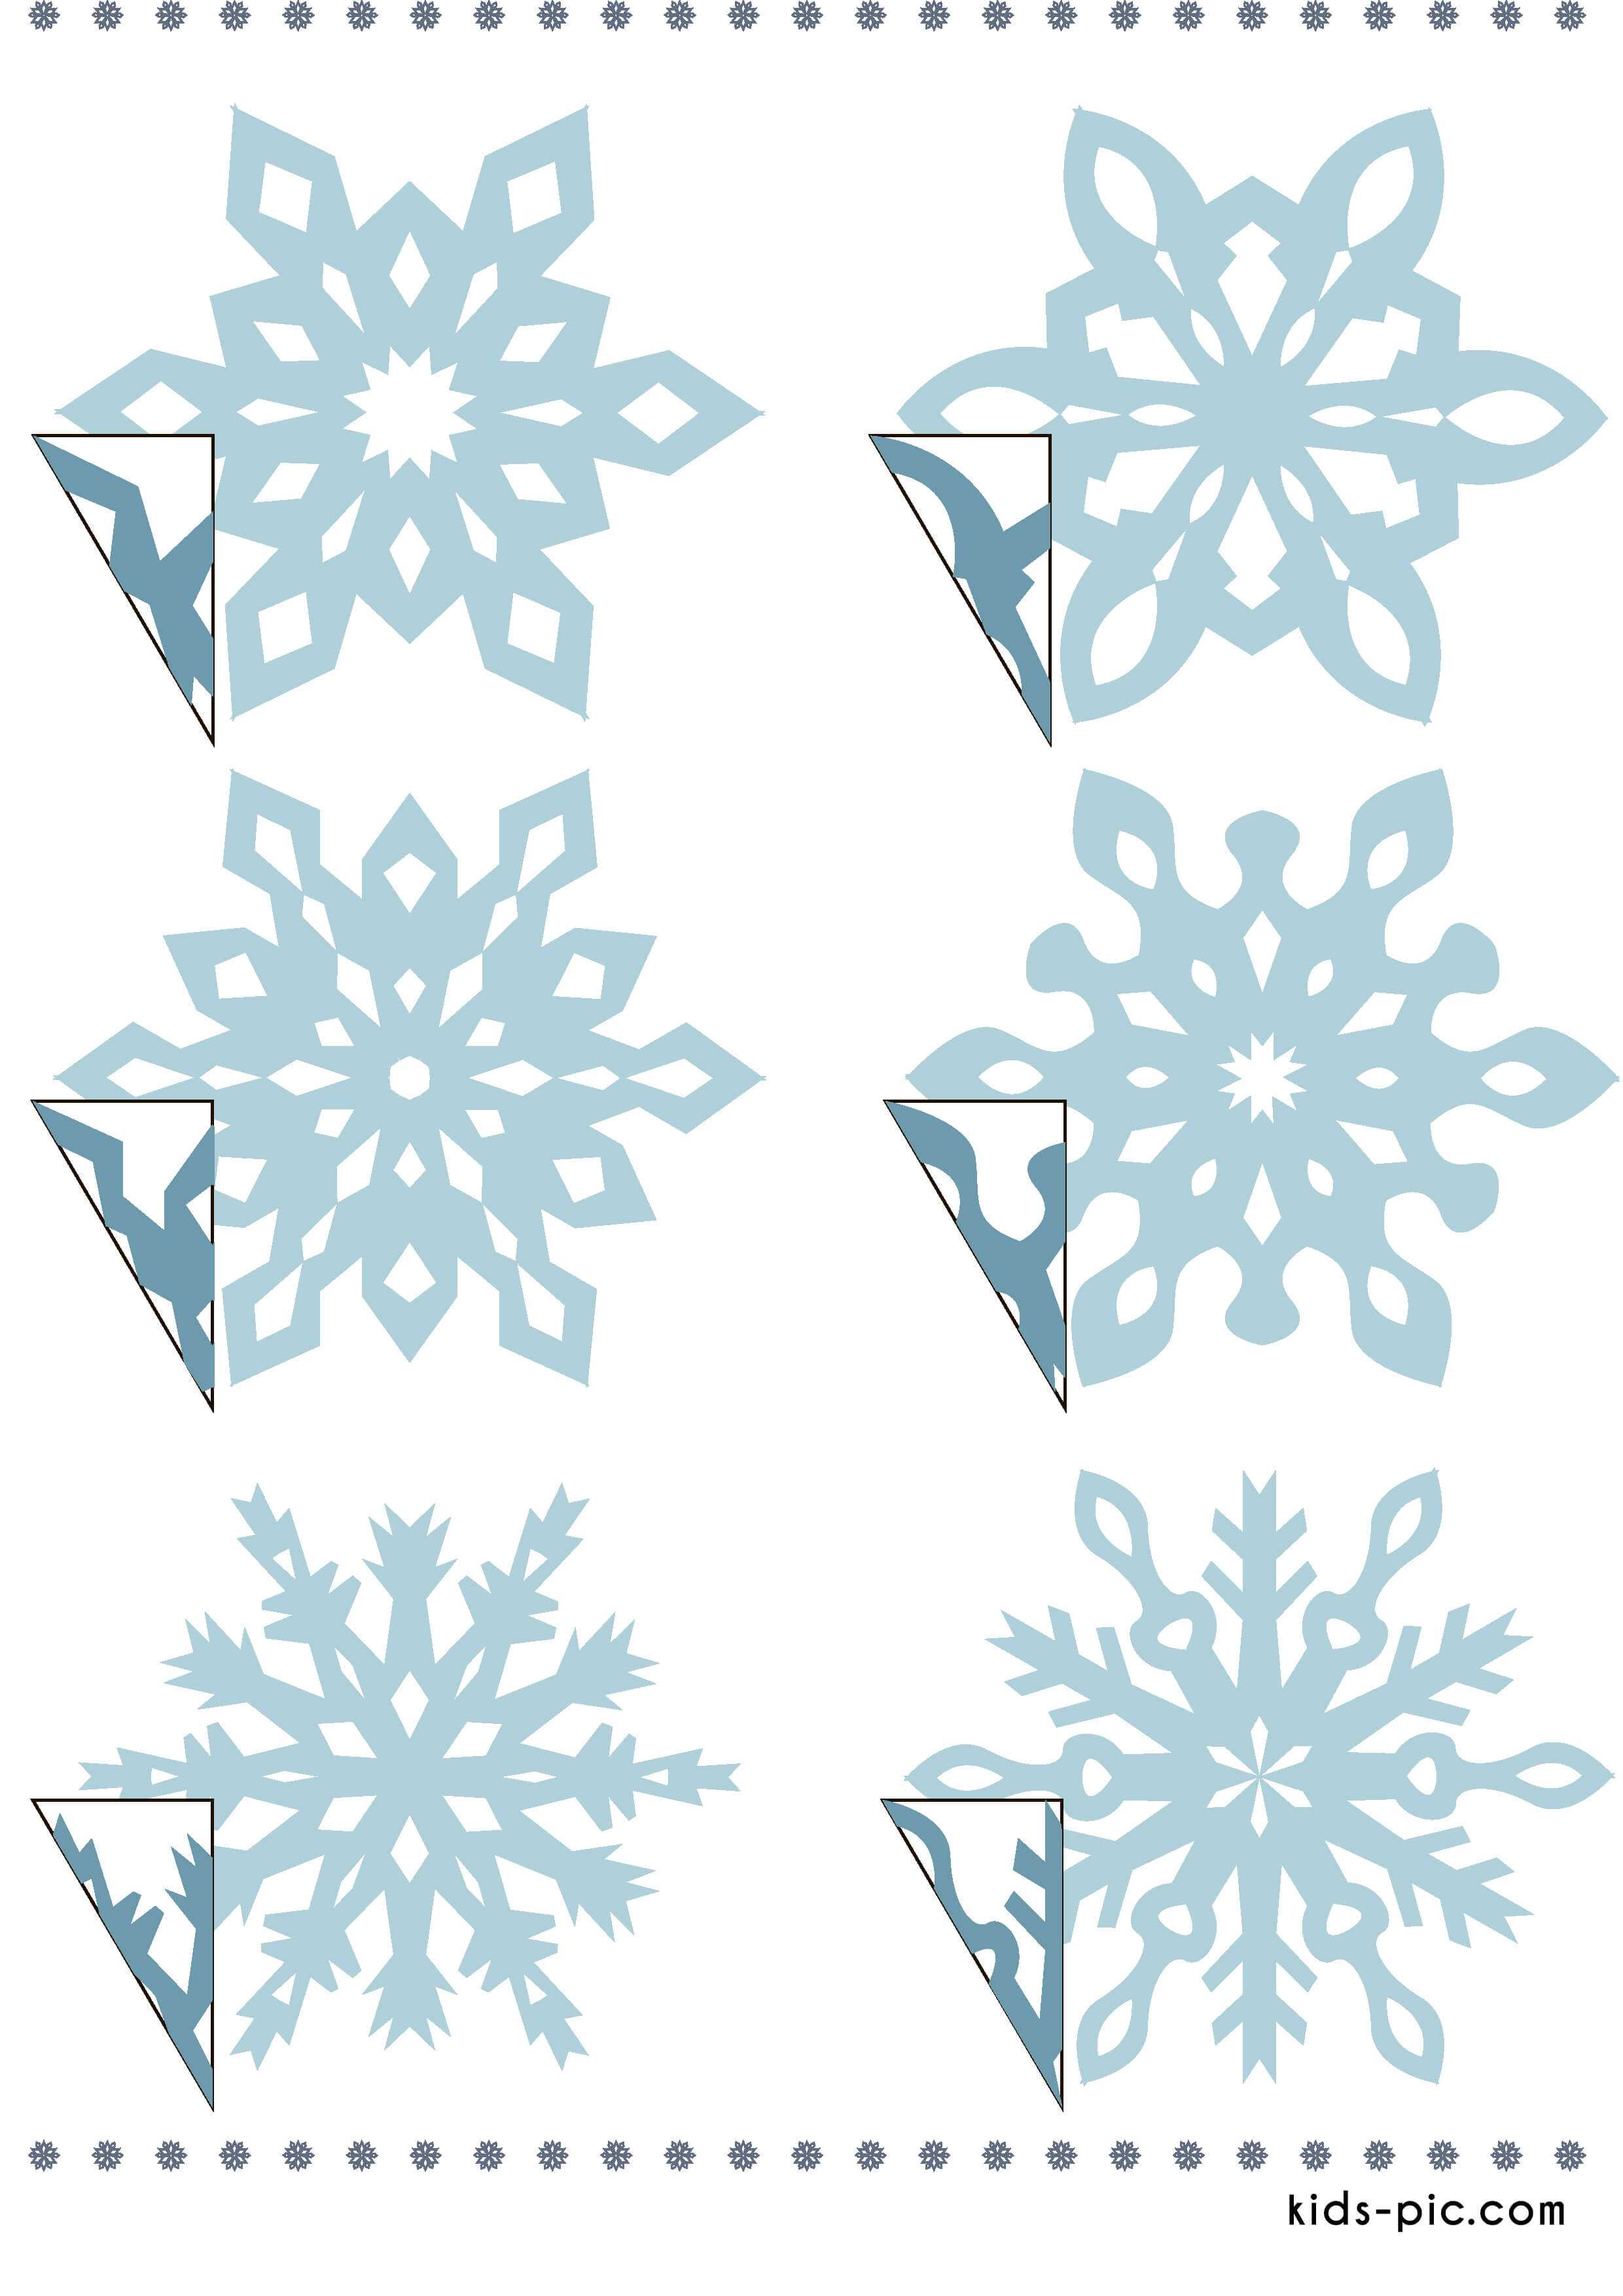 Объемные снежинки — 12 пошаговых мастер классов вырезания снежинок из бумаги